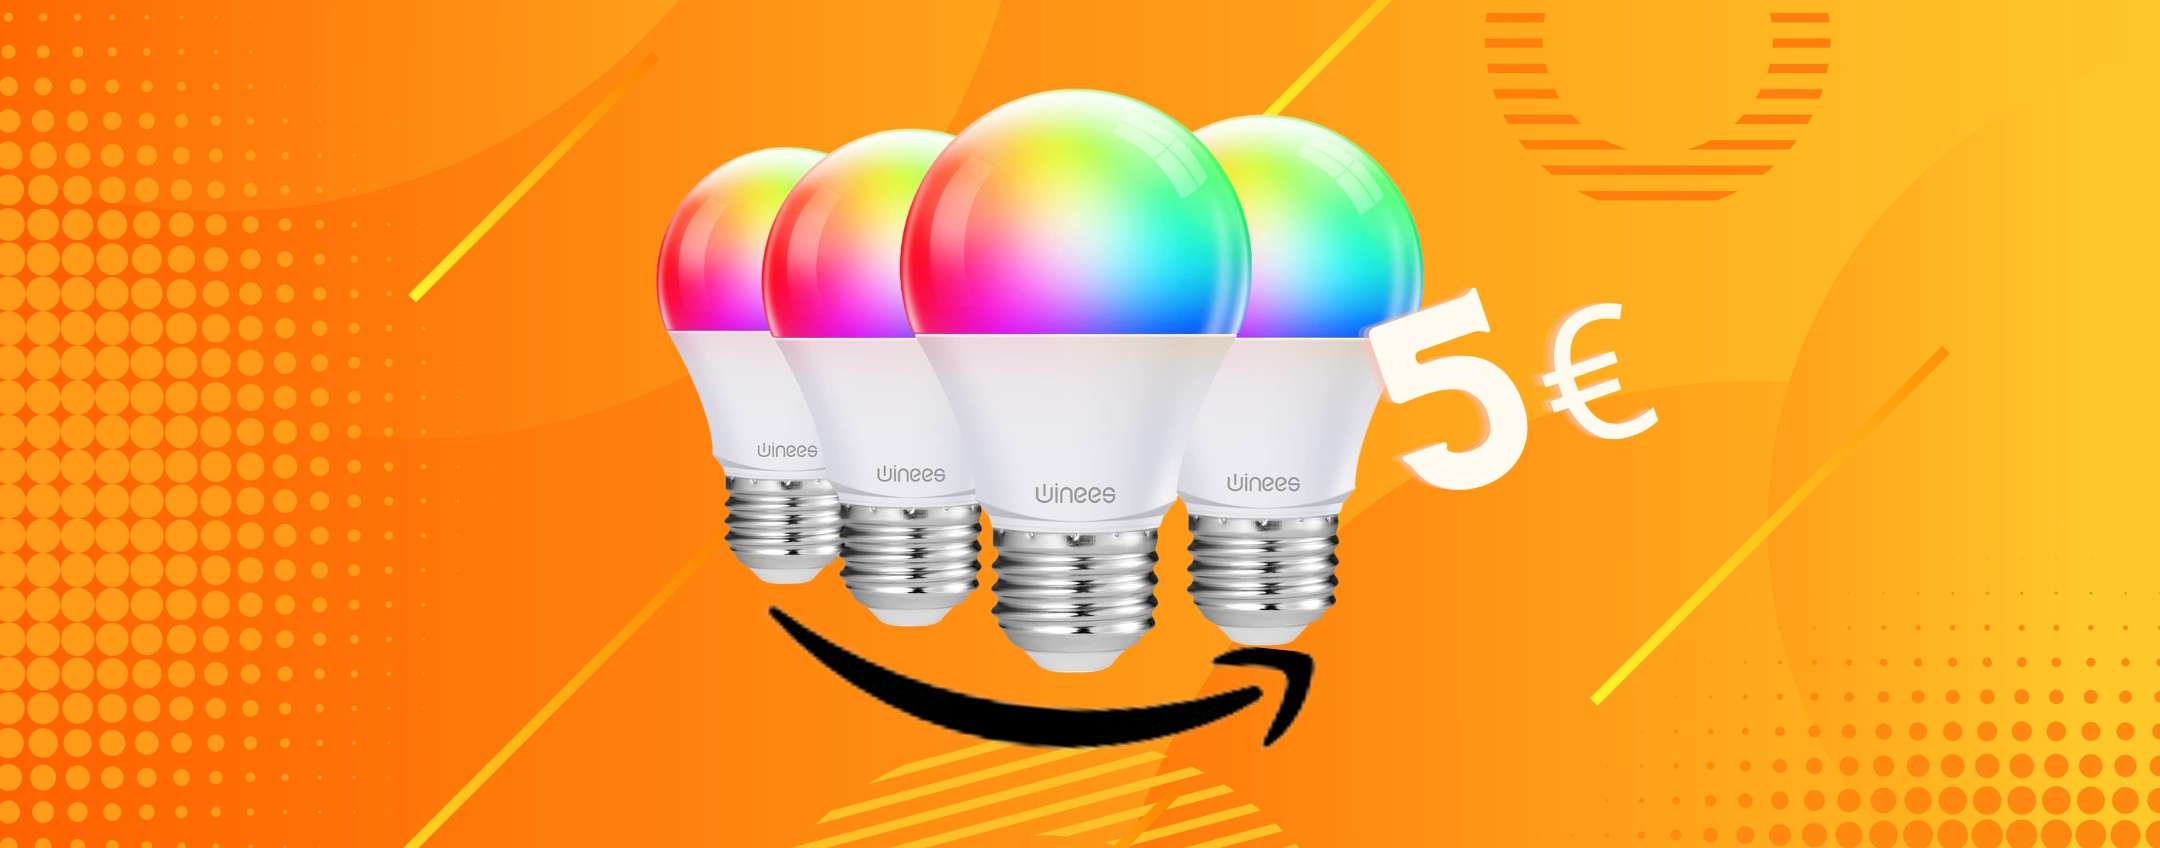 Bomba : 4 lampadine WiFi colorate a soli 18,99€